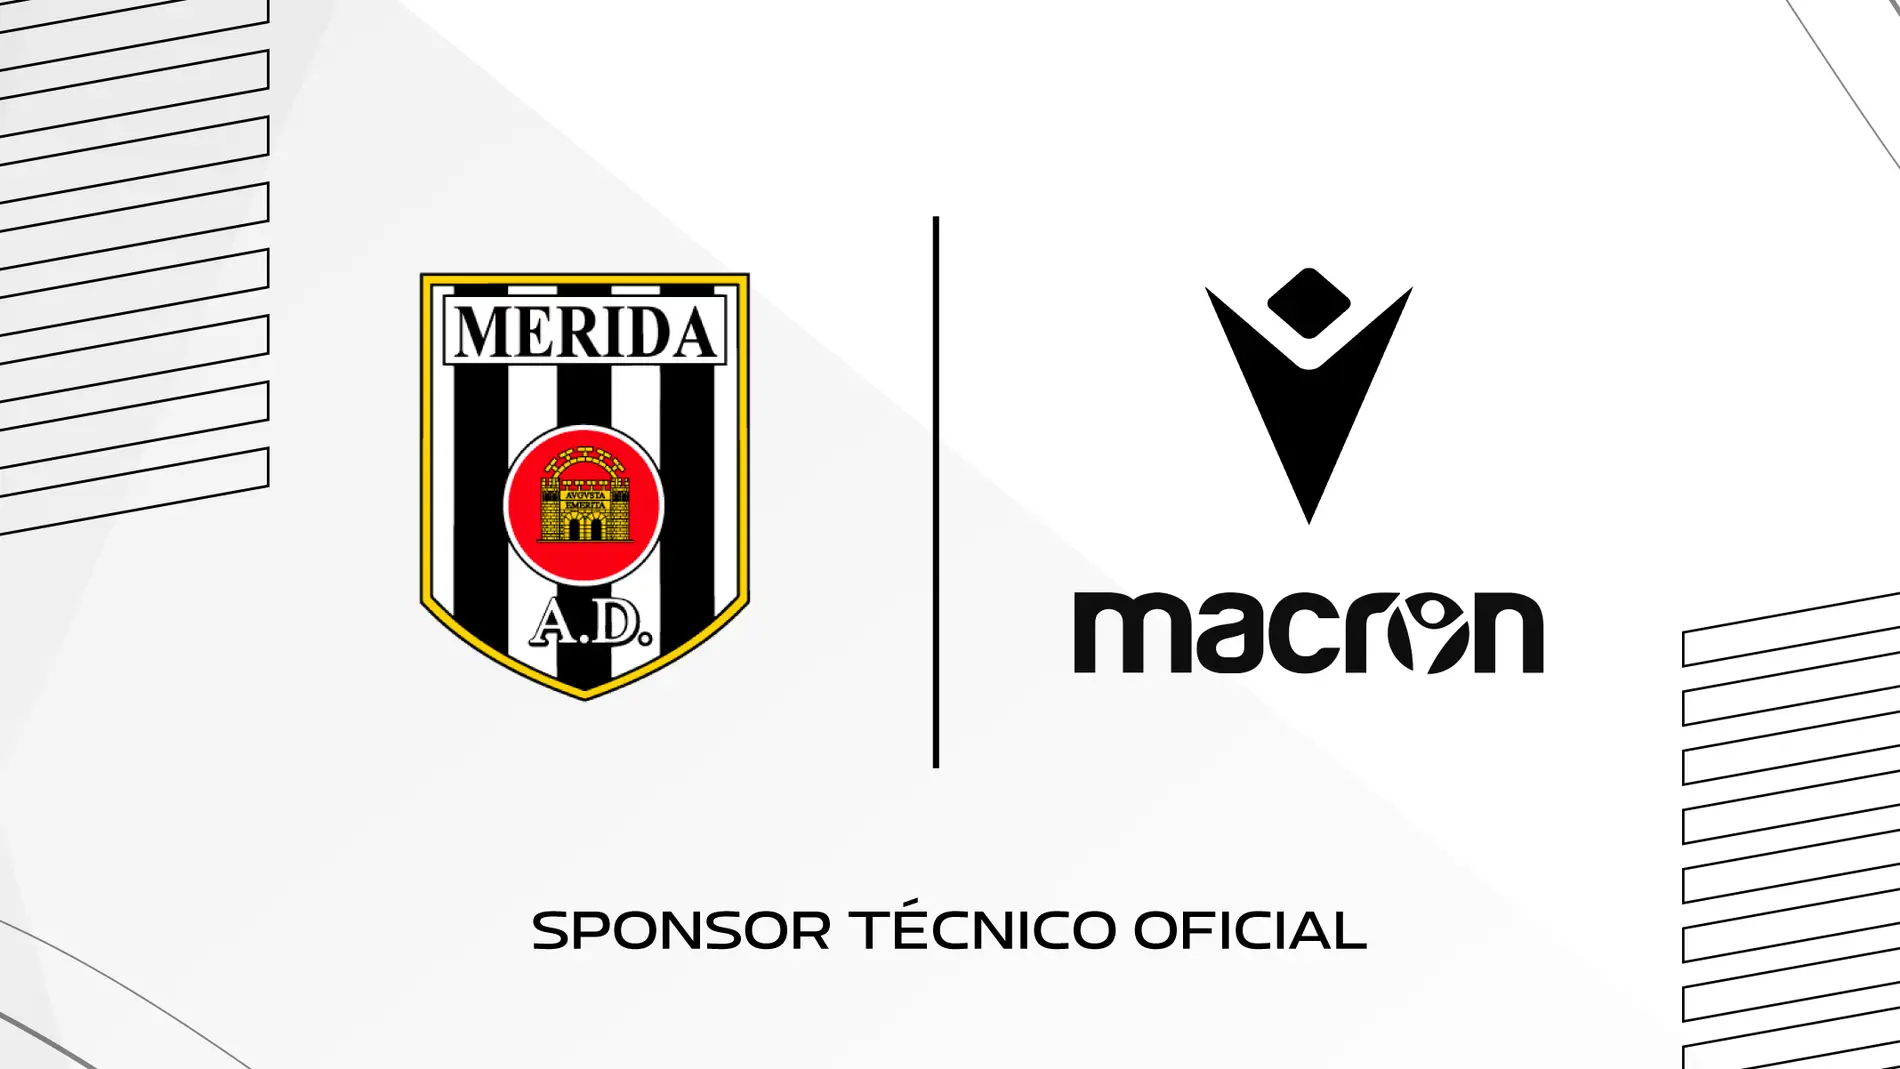 La Asociación Deportiva Mérida y la marca deportiva italiana MACRON renuevan su acuerdo hasta la temporada 2027/28